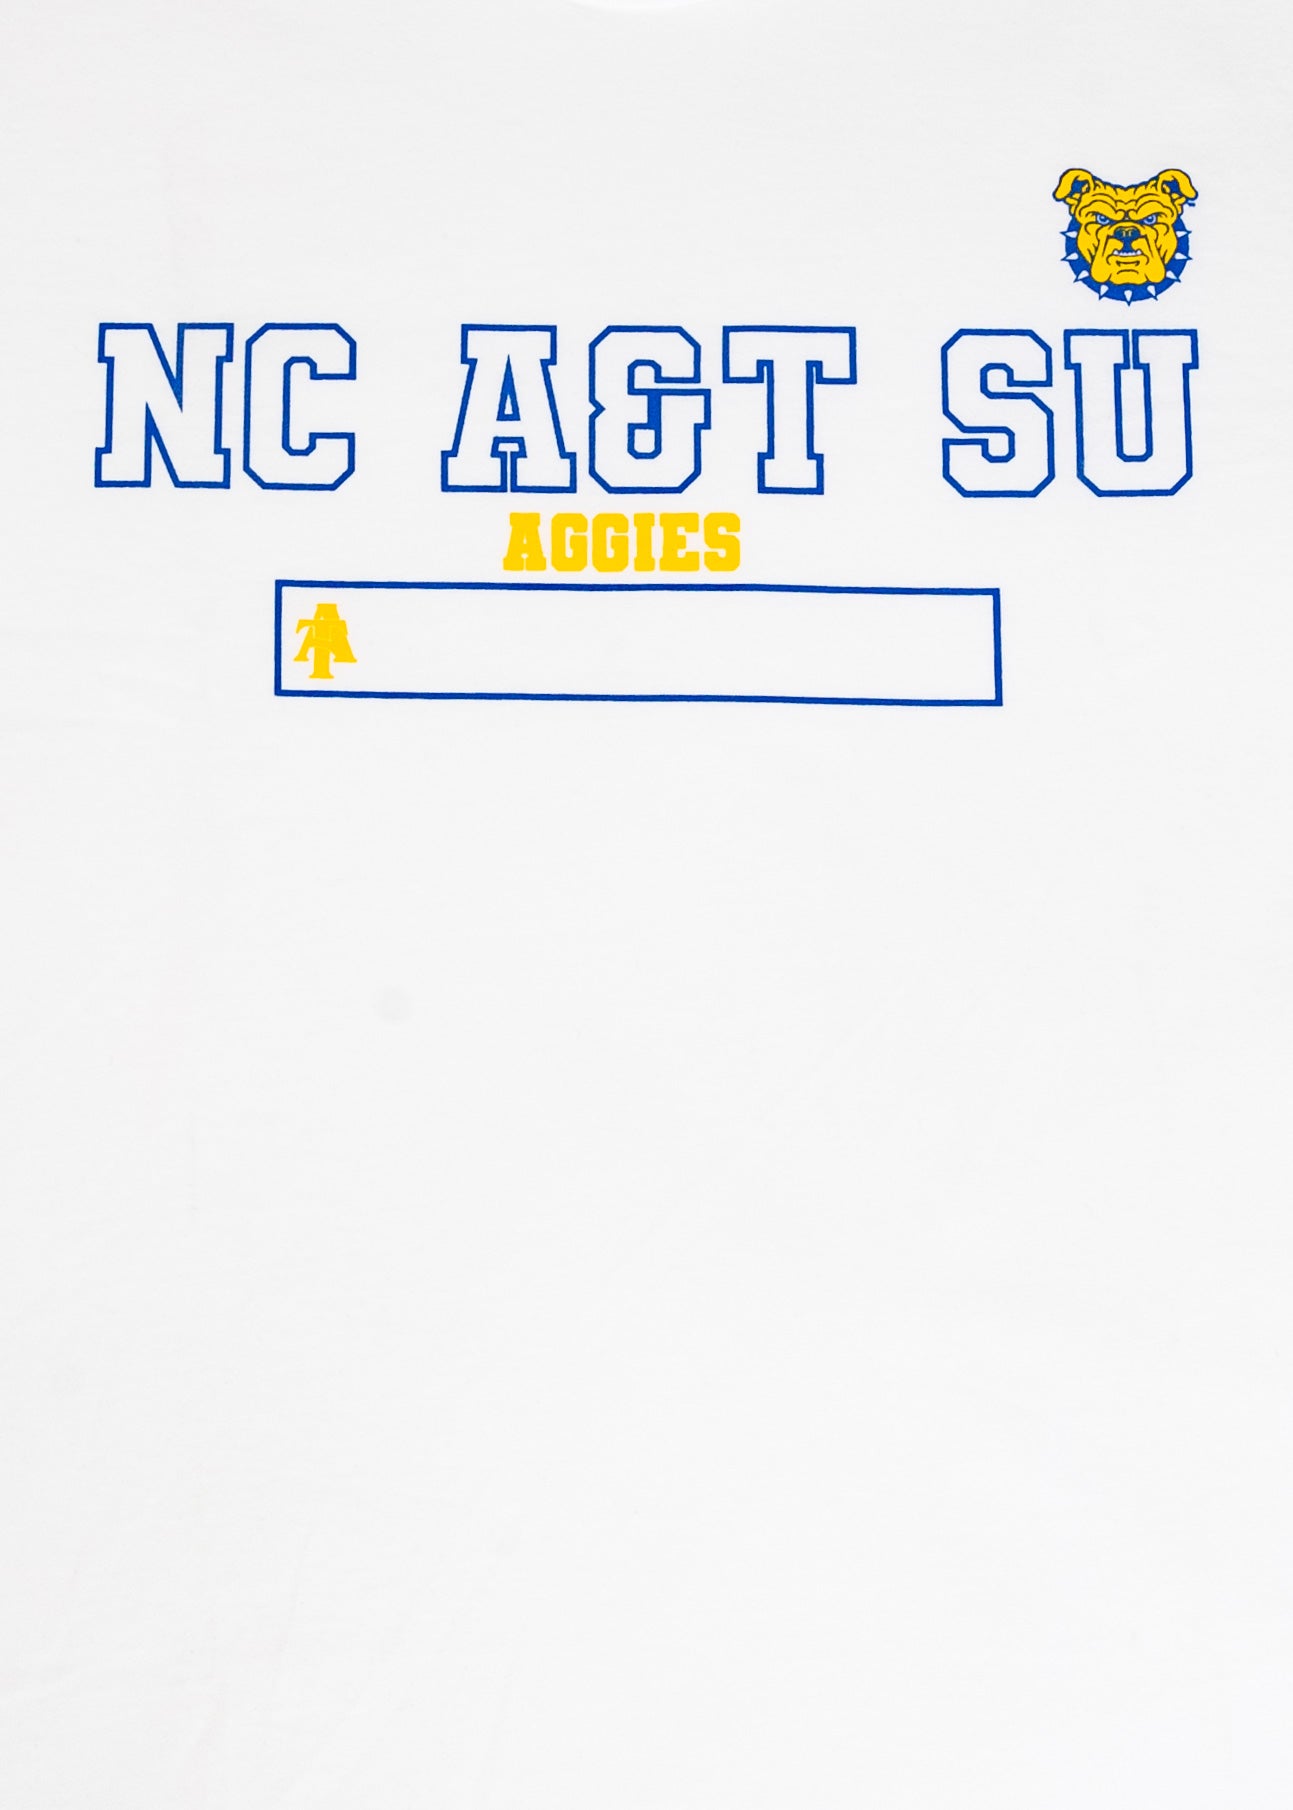 NCA&T SU Athletics T-shirt - 9tofive Shop - 95C-AT002GL